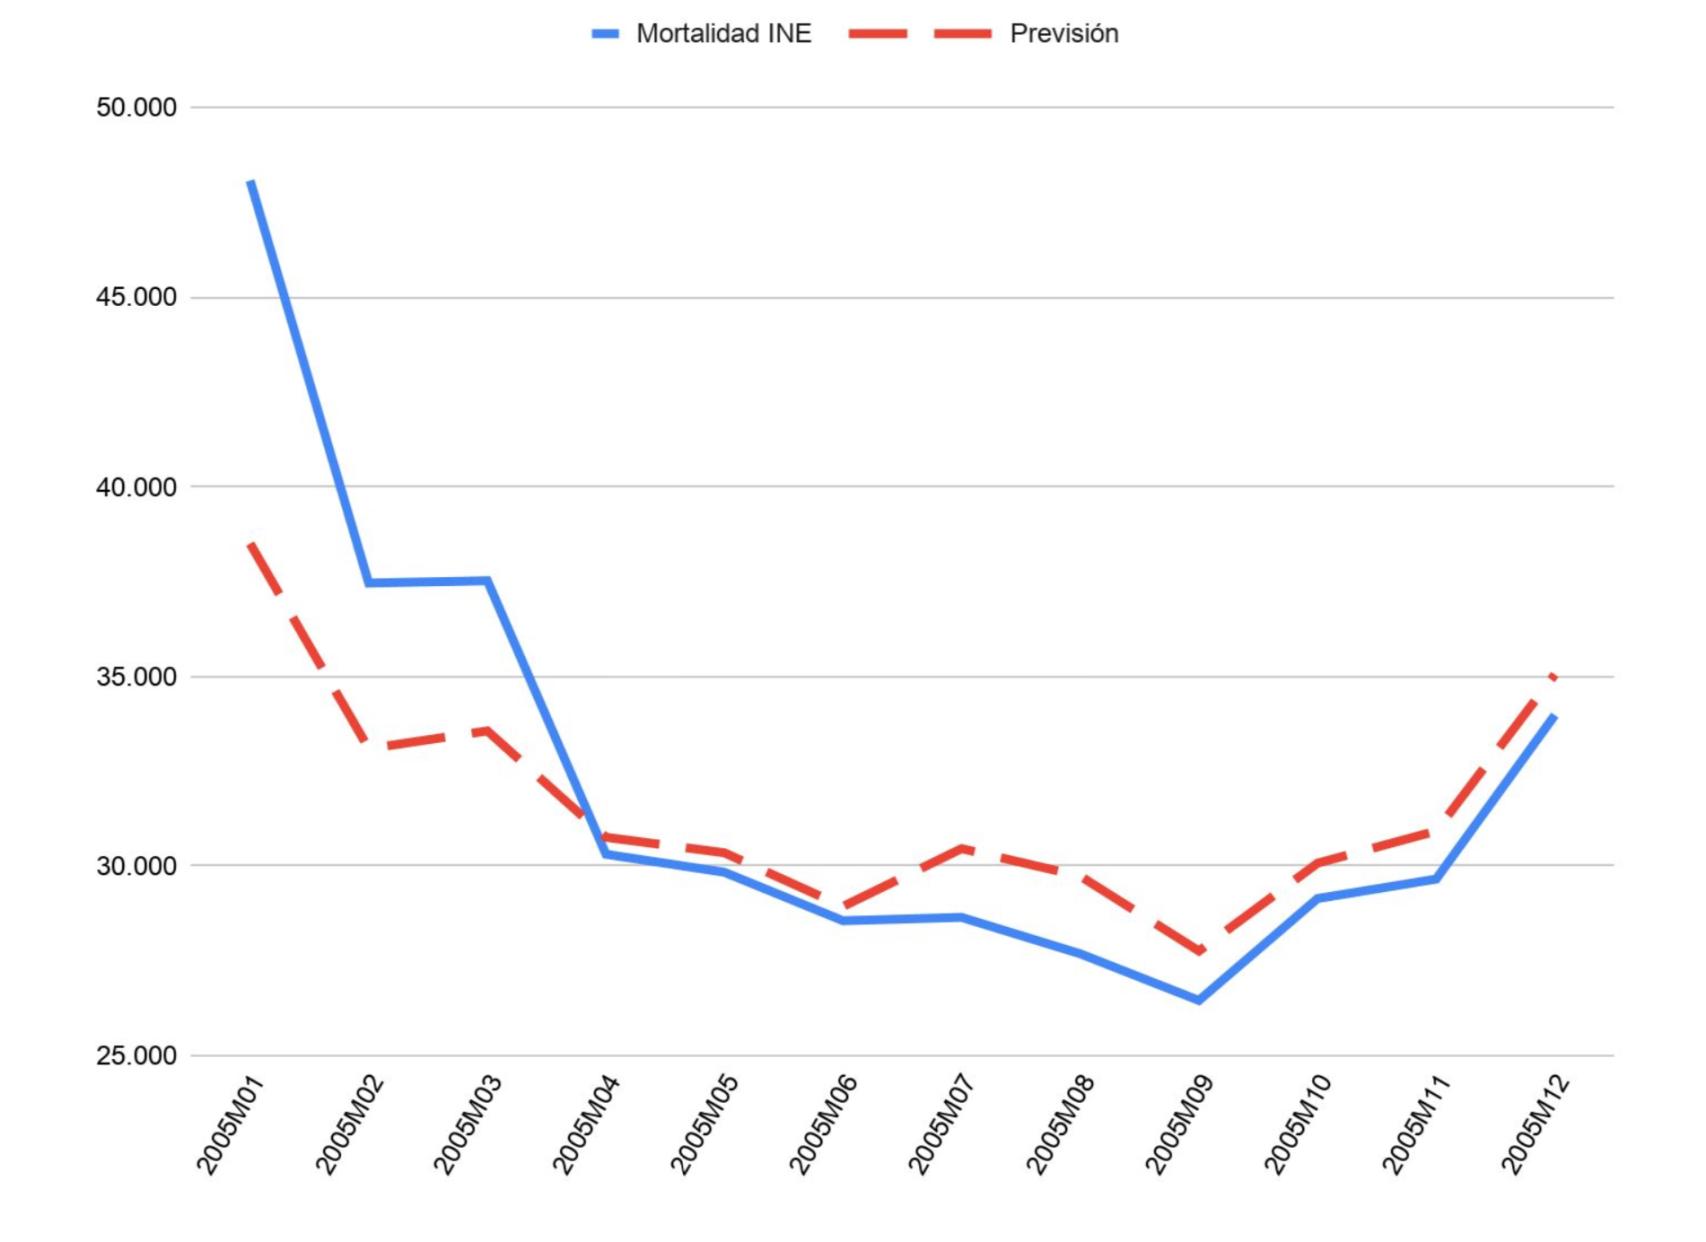 Episodio de gripe común en 2005. Comparación de mortalidad INE y previsión Inverence.